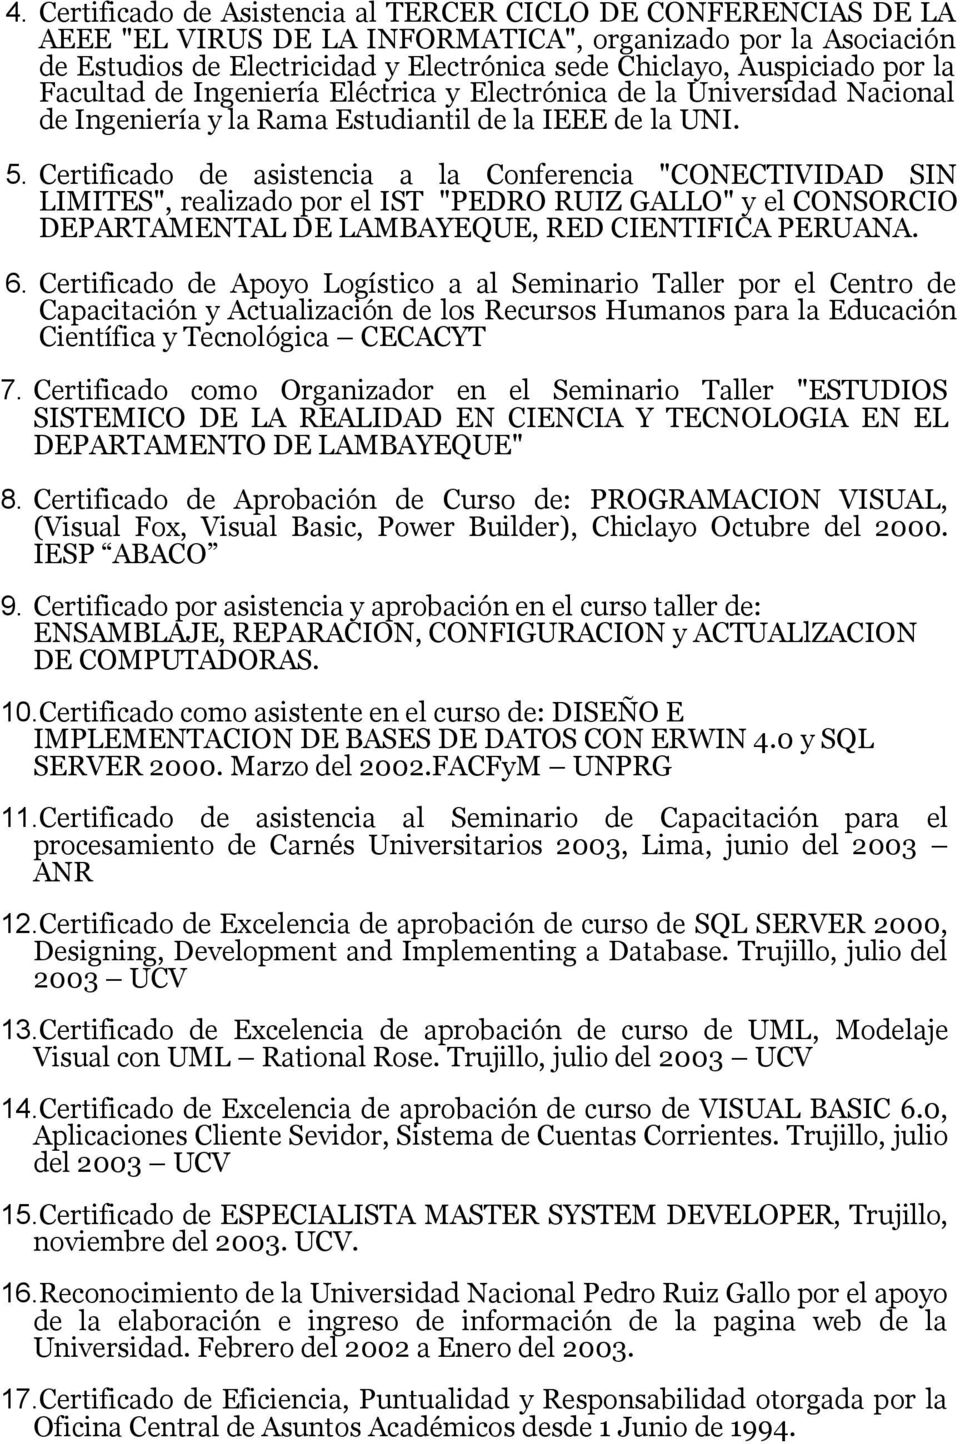 Certificado de asistencia a la Conferencia "CONECTIVIDAD SIN LIMITES", realizado por el IST "PEDRO RUIZ GALLO" y el CONSORCIO DEPARTAMENTAL DE LAMBAYEQUE, RED CIENTIFICA PERUANA. 6.